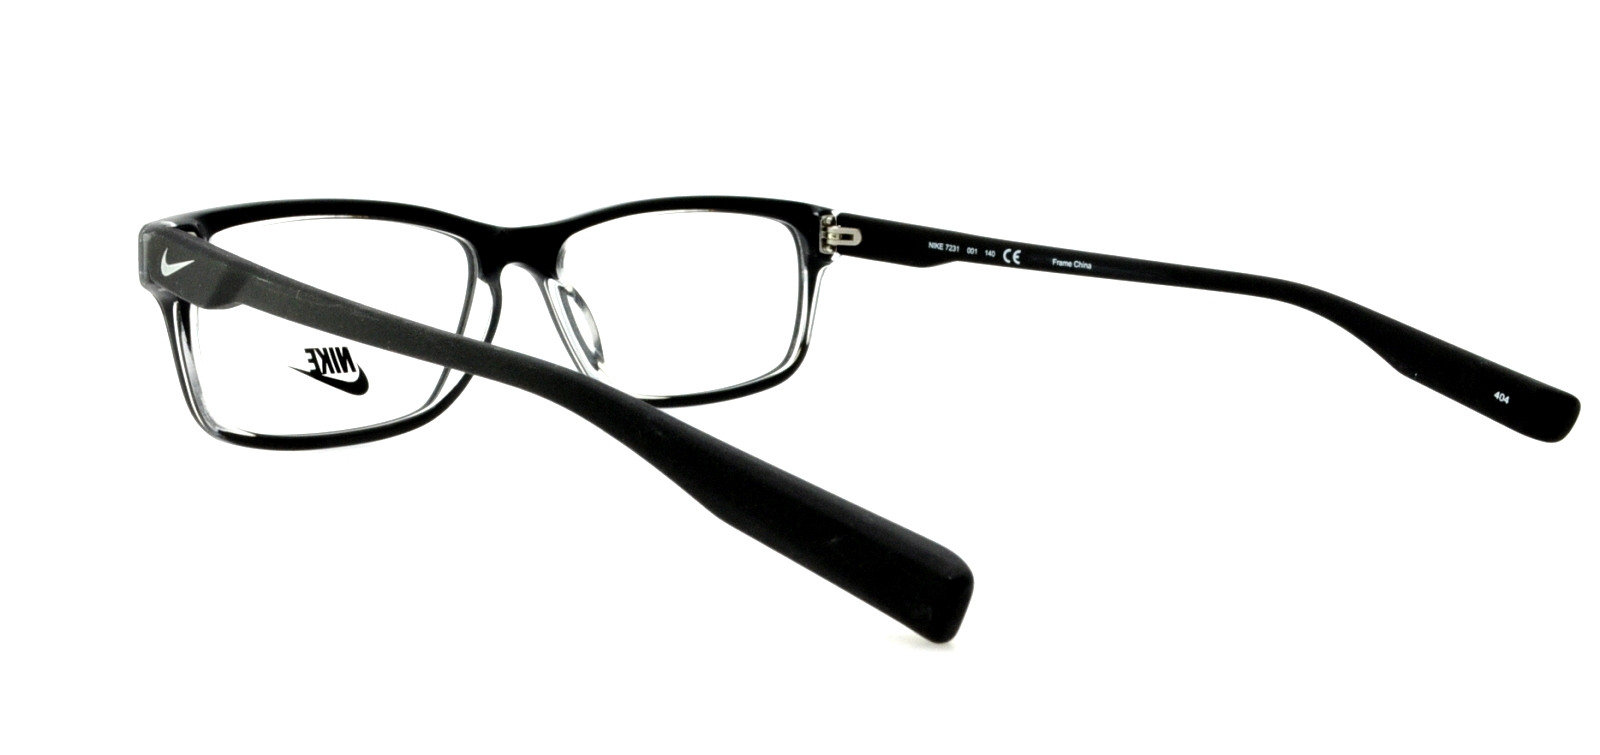 Designer Frames Outlet Nike Eyeglasses 7231